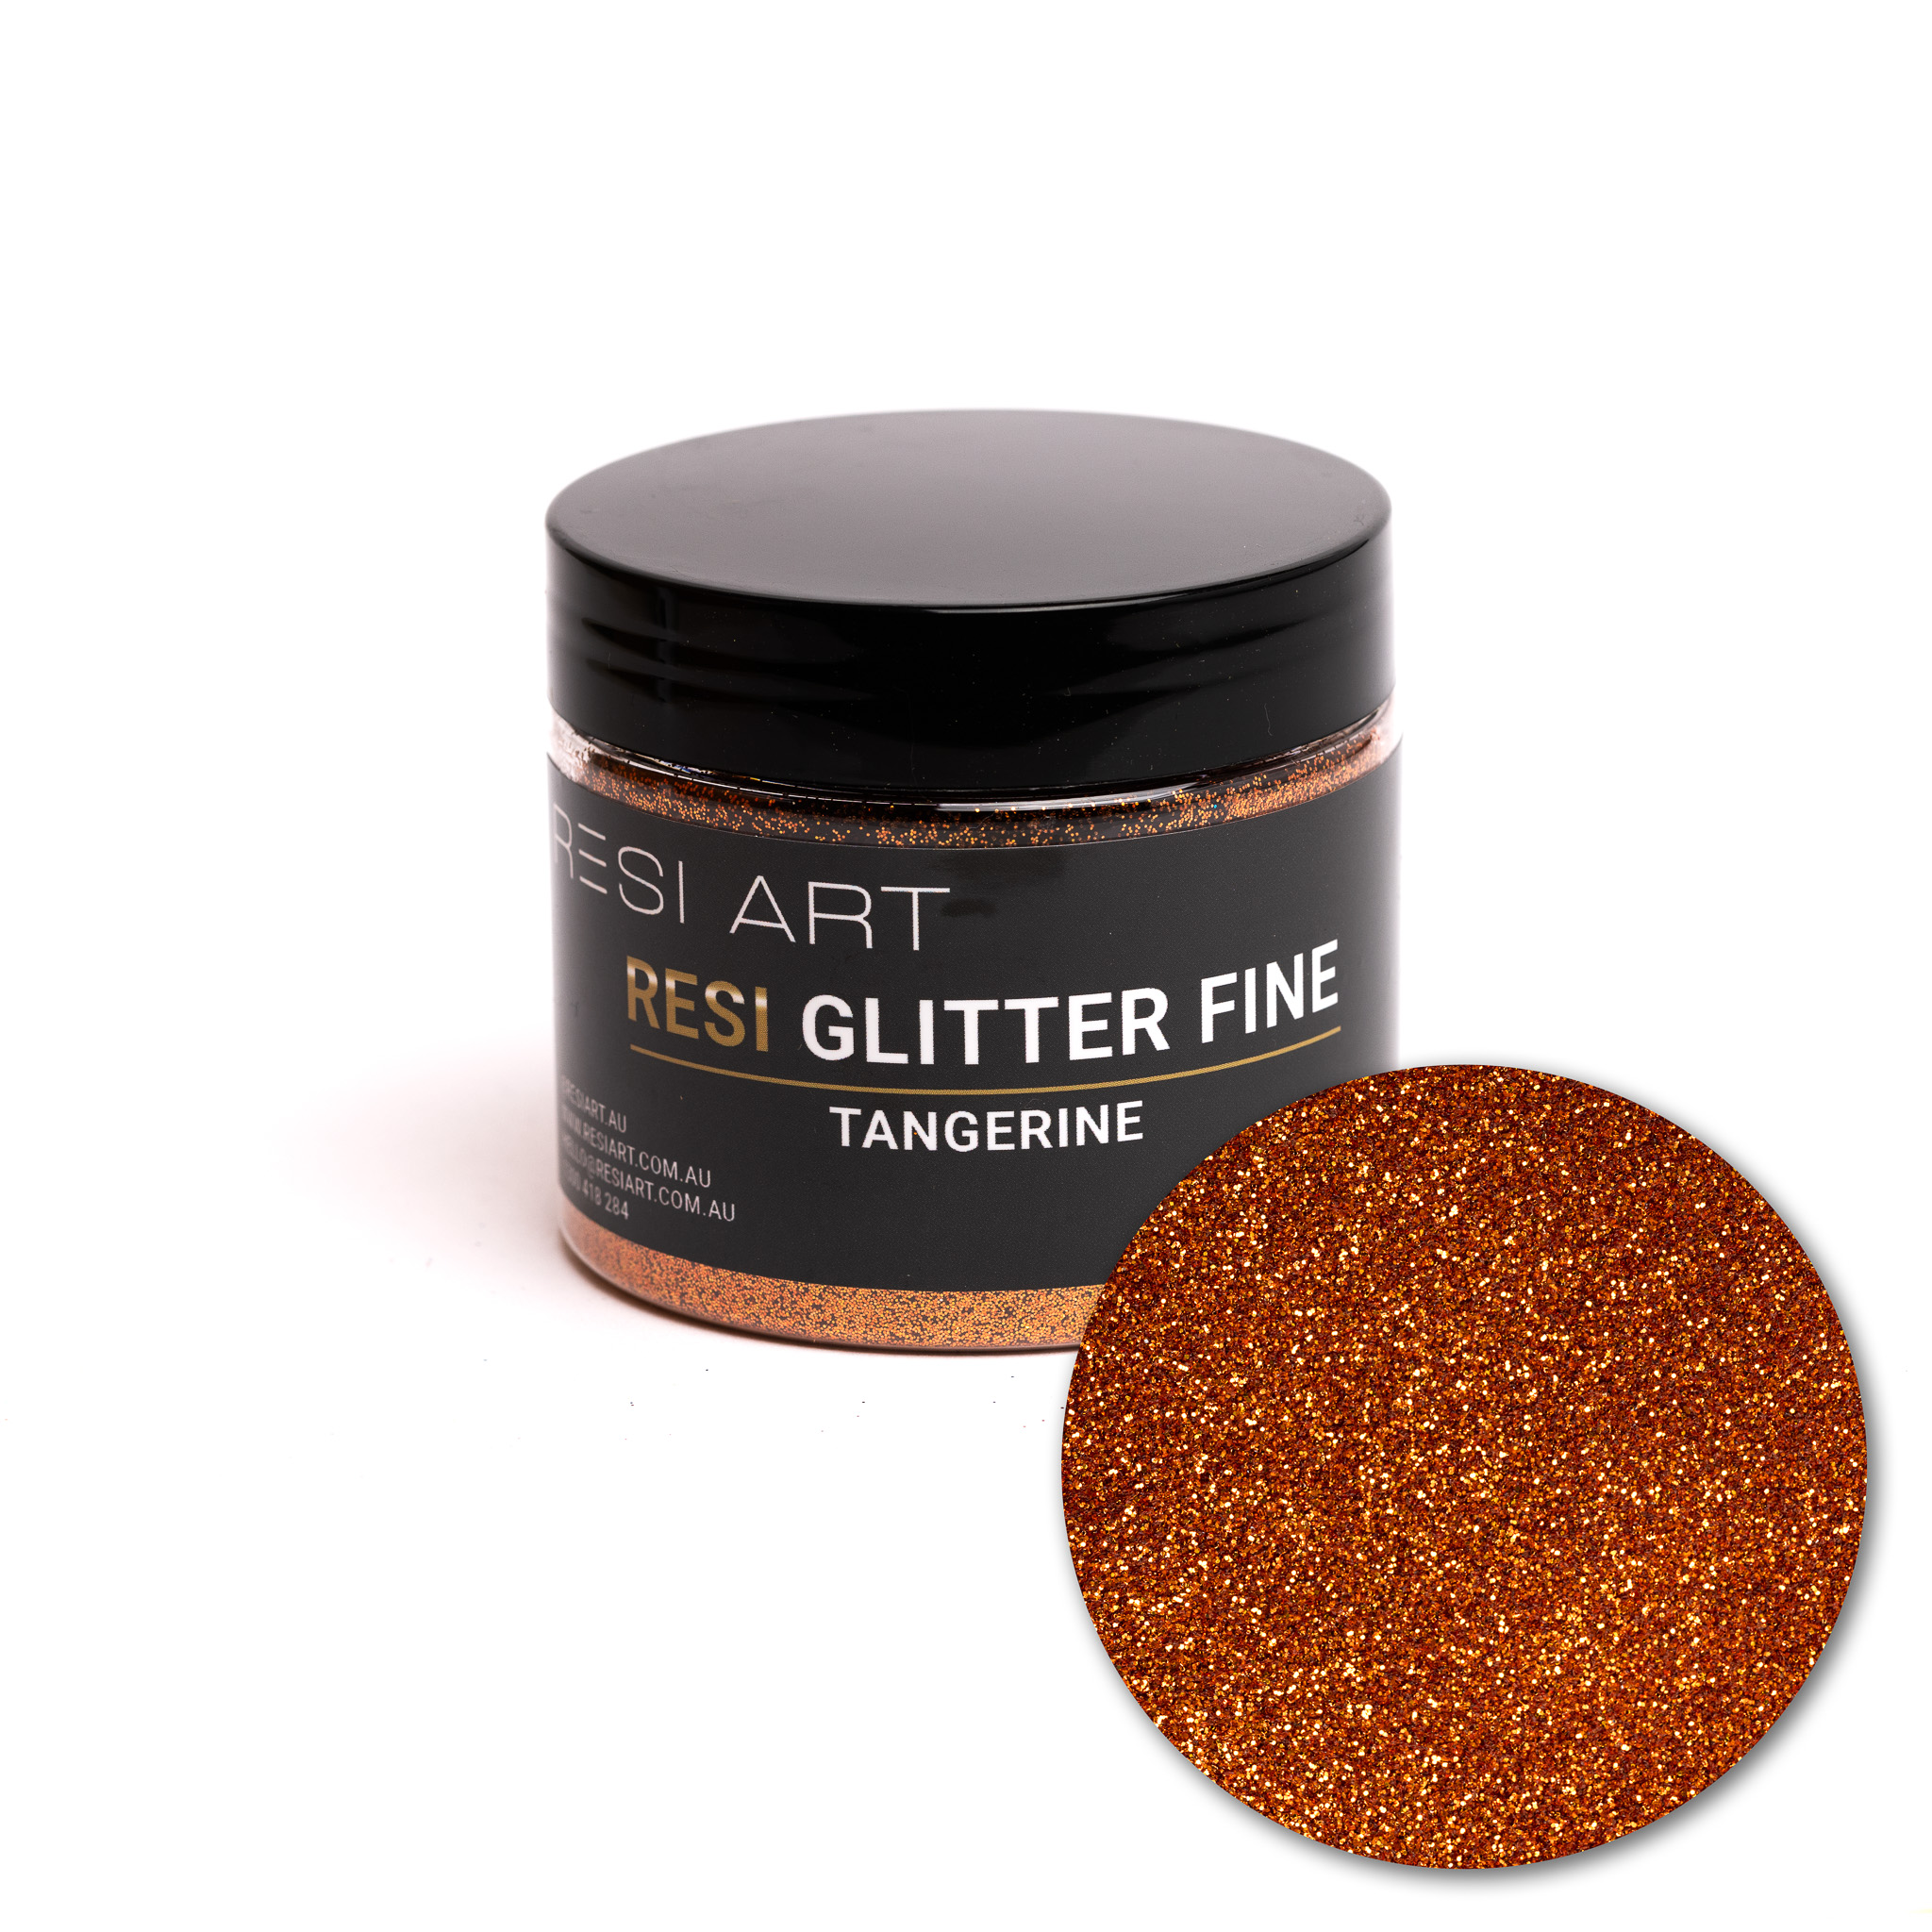 Tangerine 100g - Resi Glitter Fine